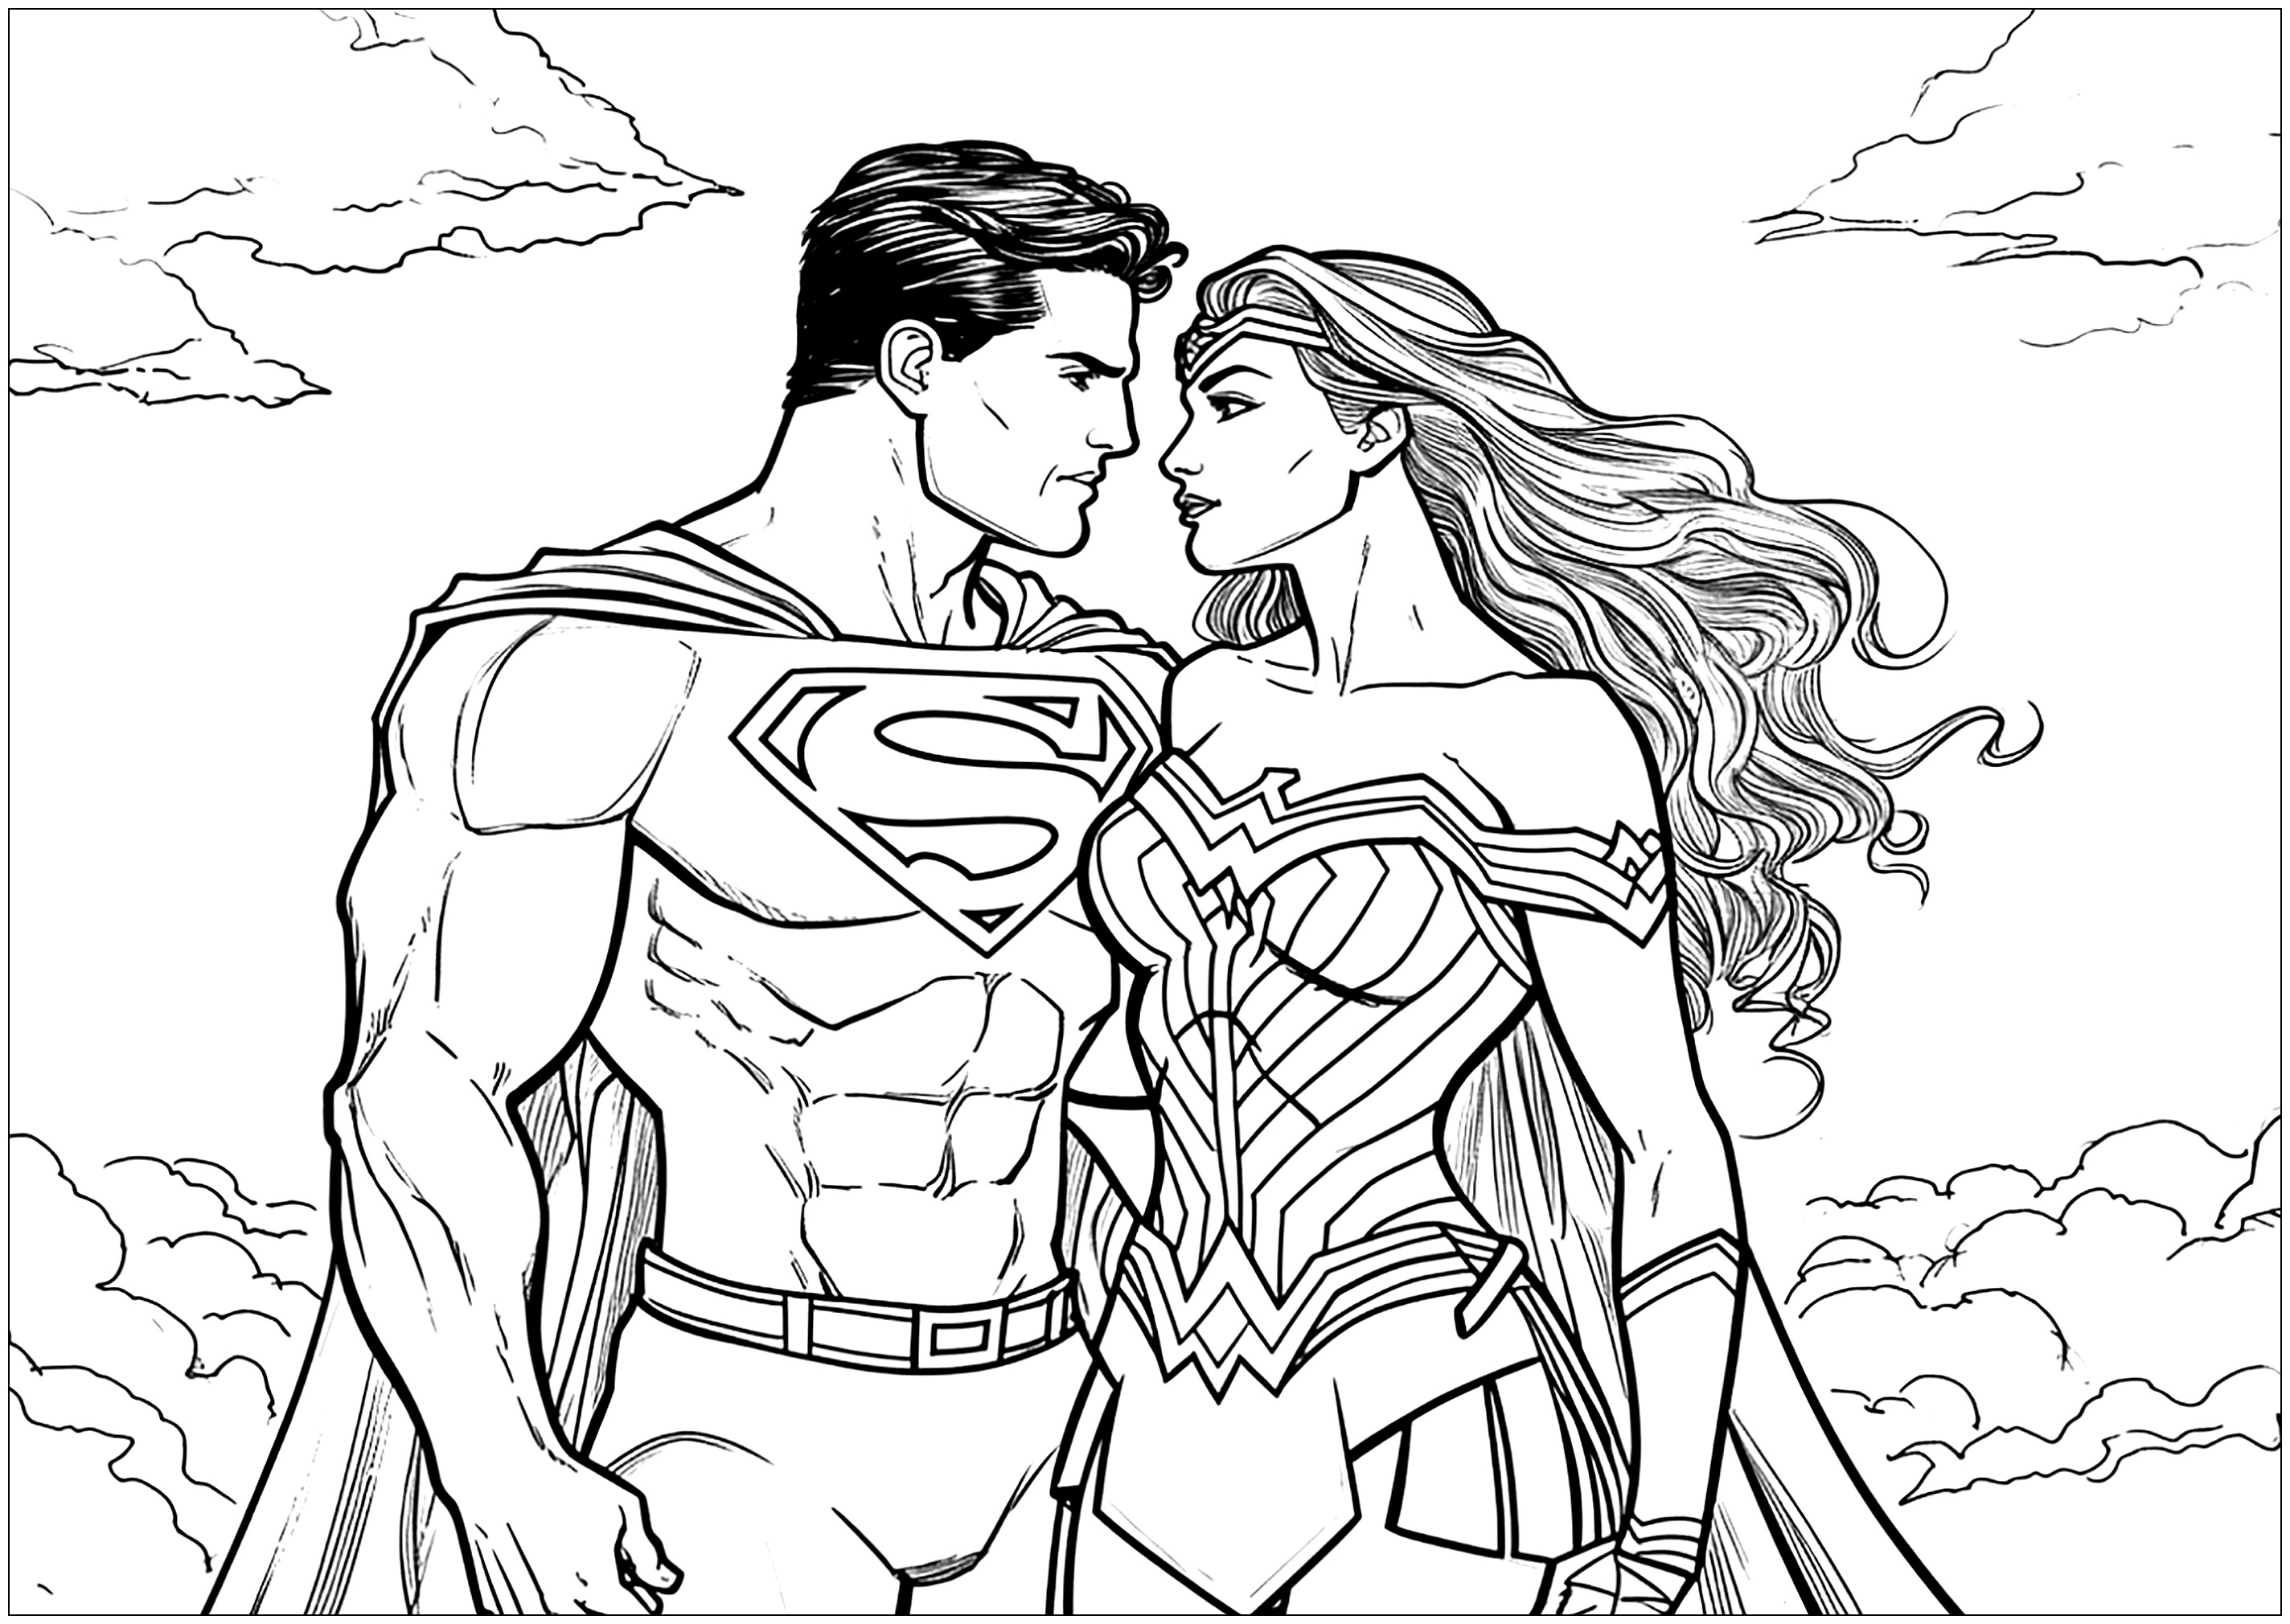 Superman et Wonder Woman amoureux. Même les super héros peuvent tomber amoureux ... Un coloriage original pour la Saint-Valentin !